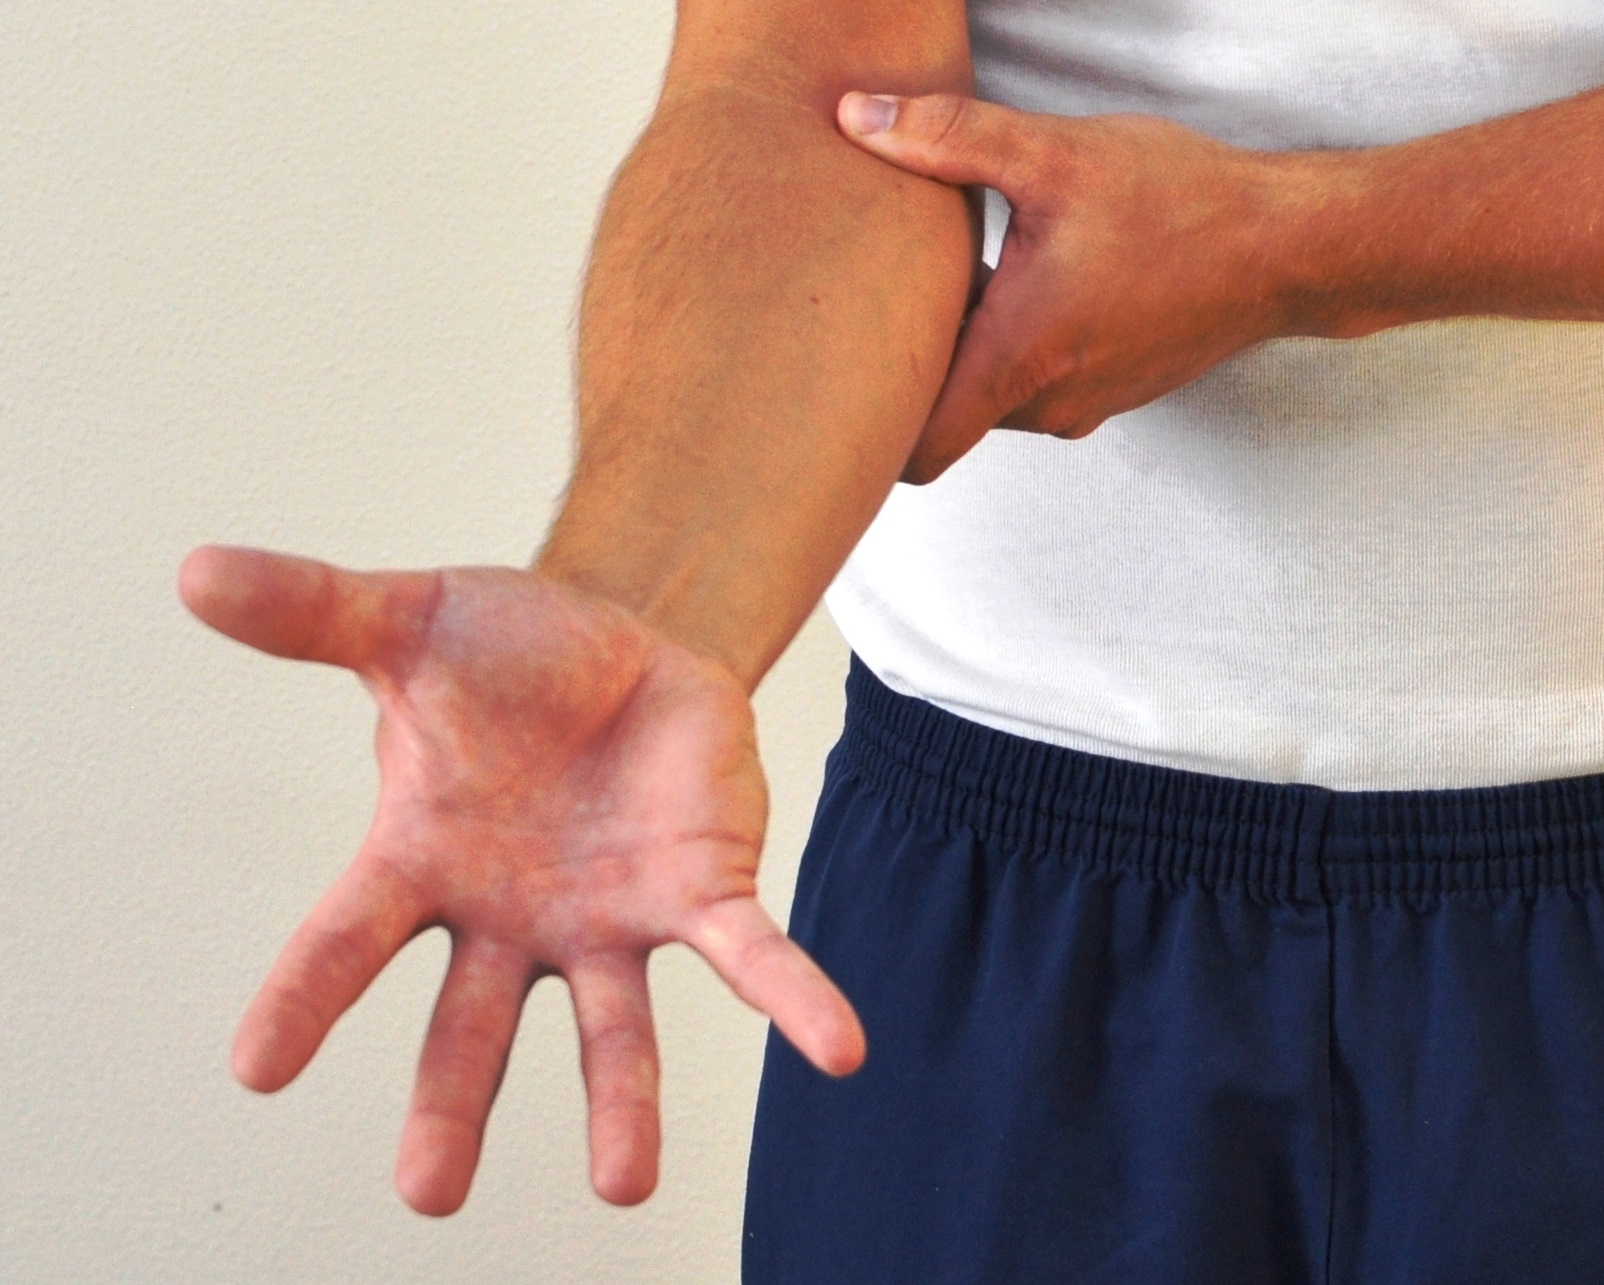 Underarm med spredte og strakte fingre - håndfladen peger opad.